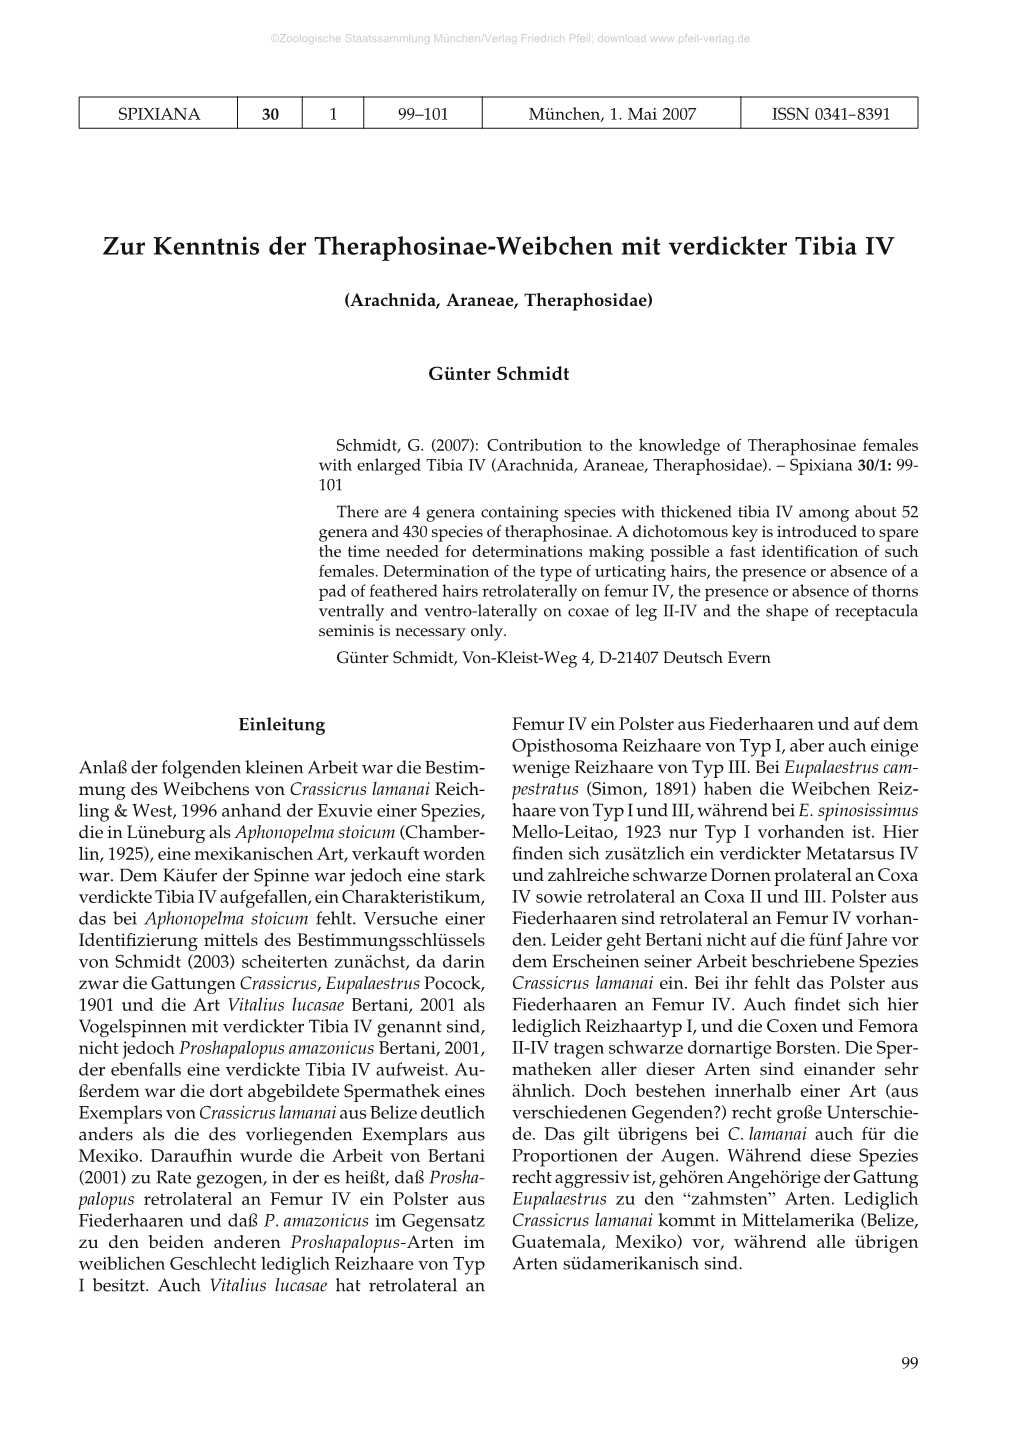 Zur Kenntnis Der Theraphosinae-Weibchen Mit Verdickter Tibia IV